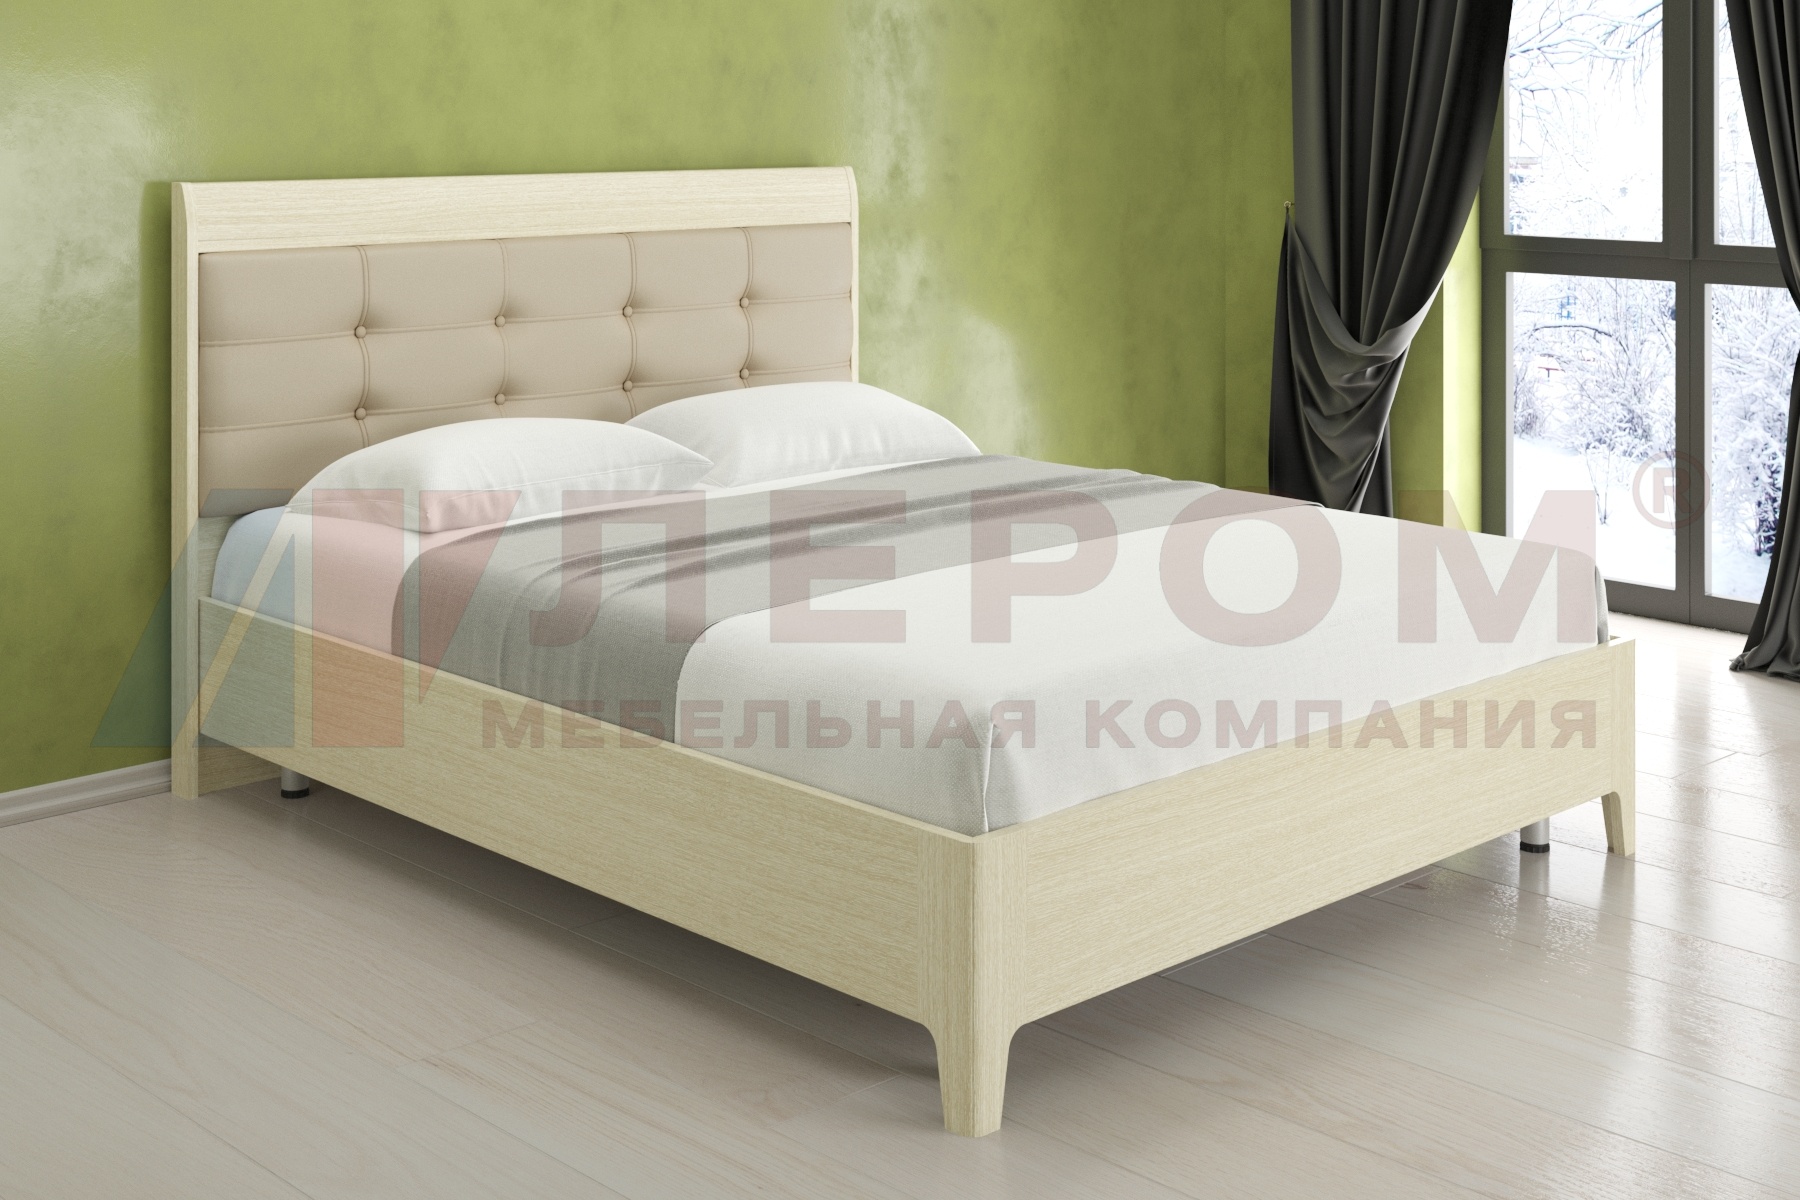 КР-2074 кровать (1,8*2,0)